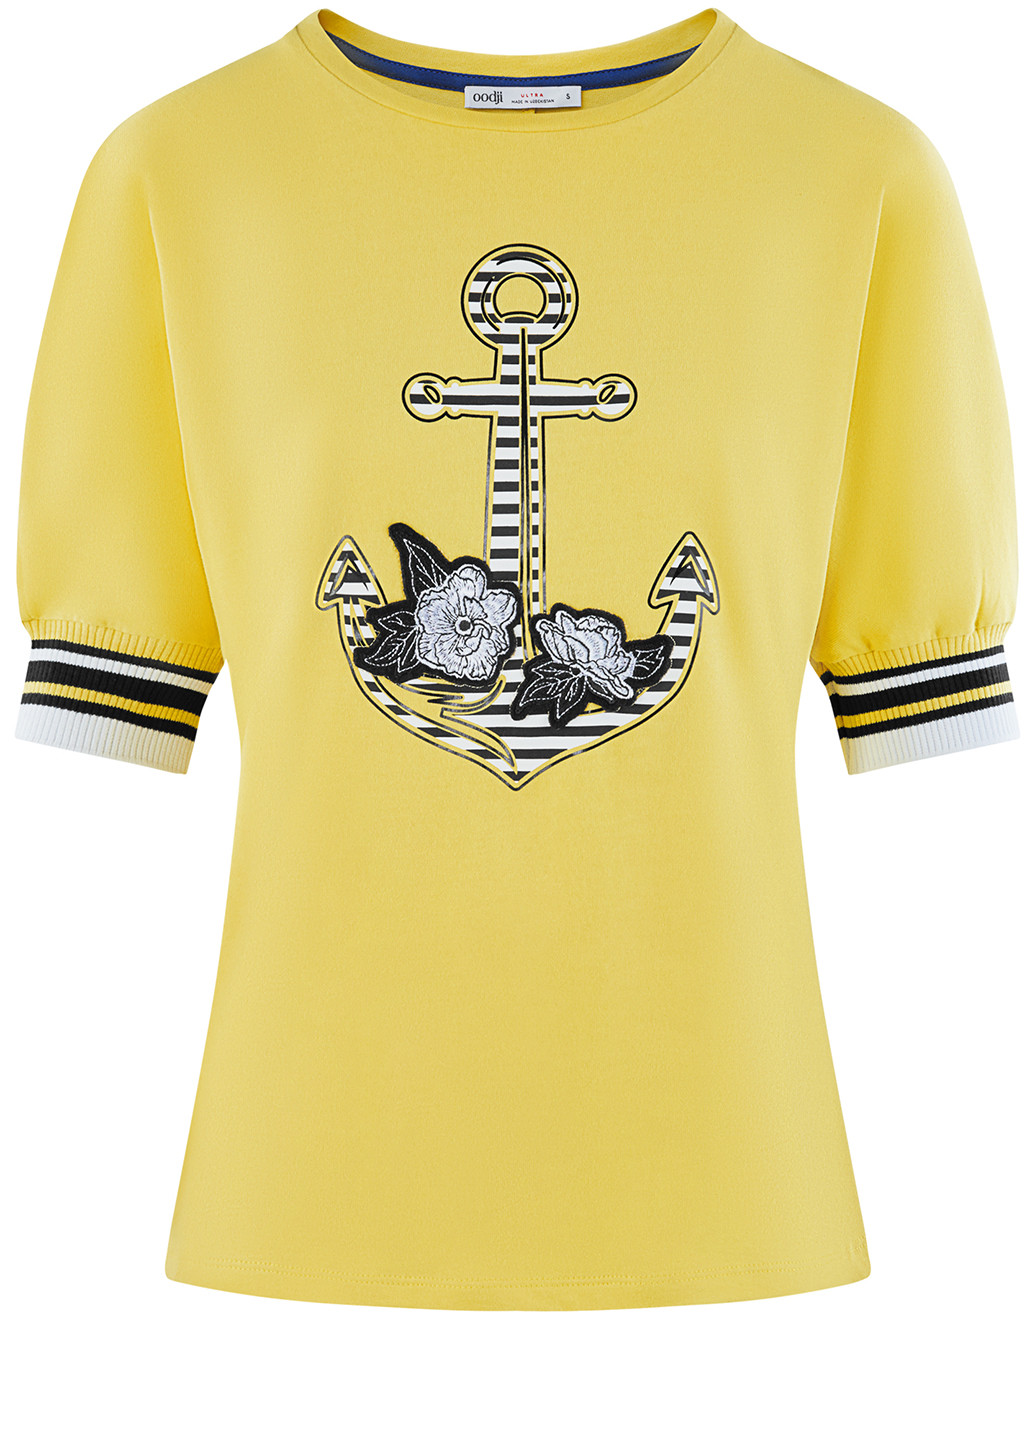 Жовта літня футболка Oodji